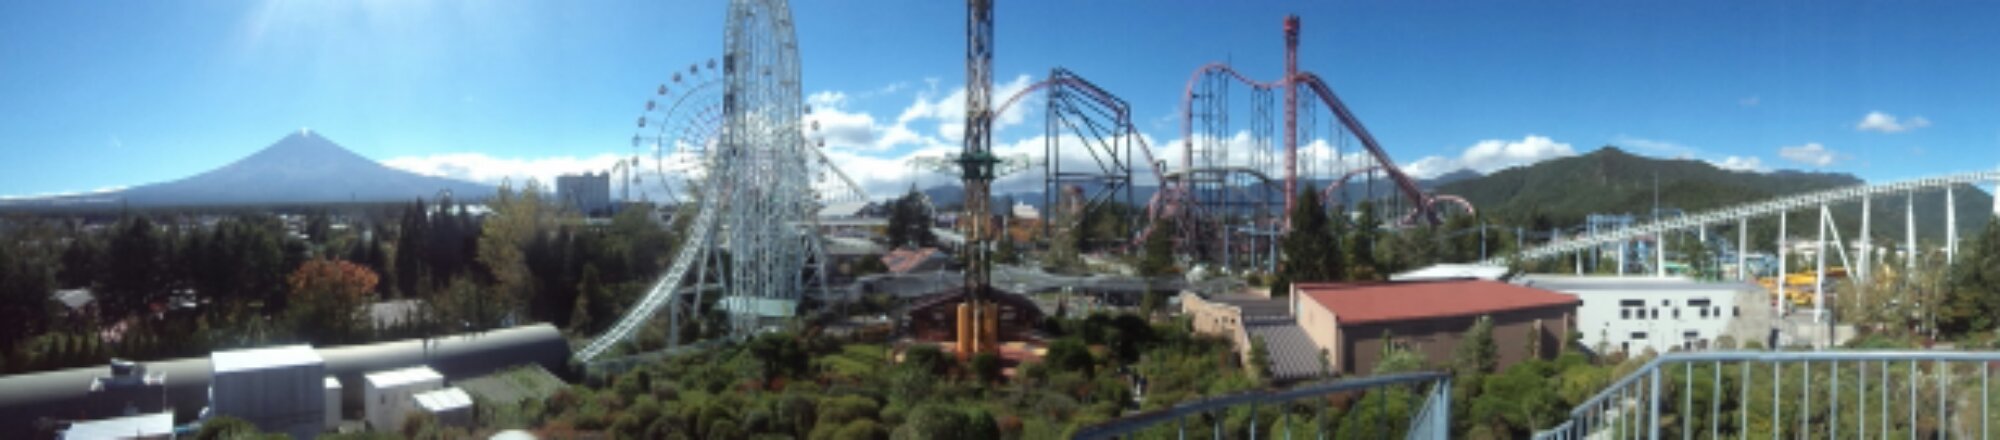 Fuji-Q - Vista panorâmica de cima do mirante do parque